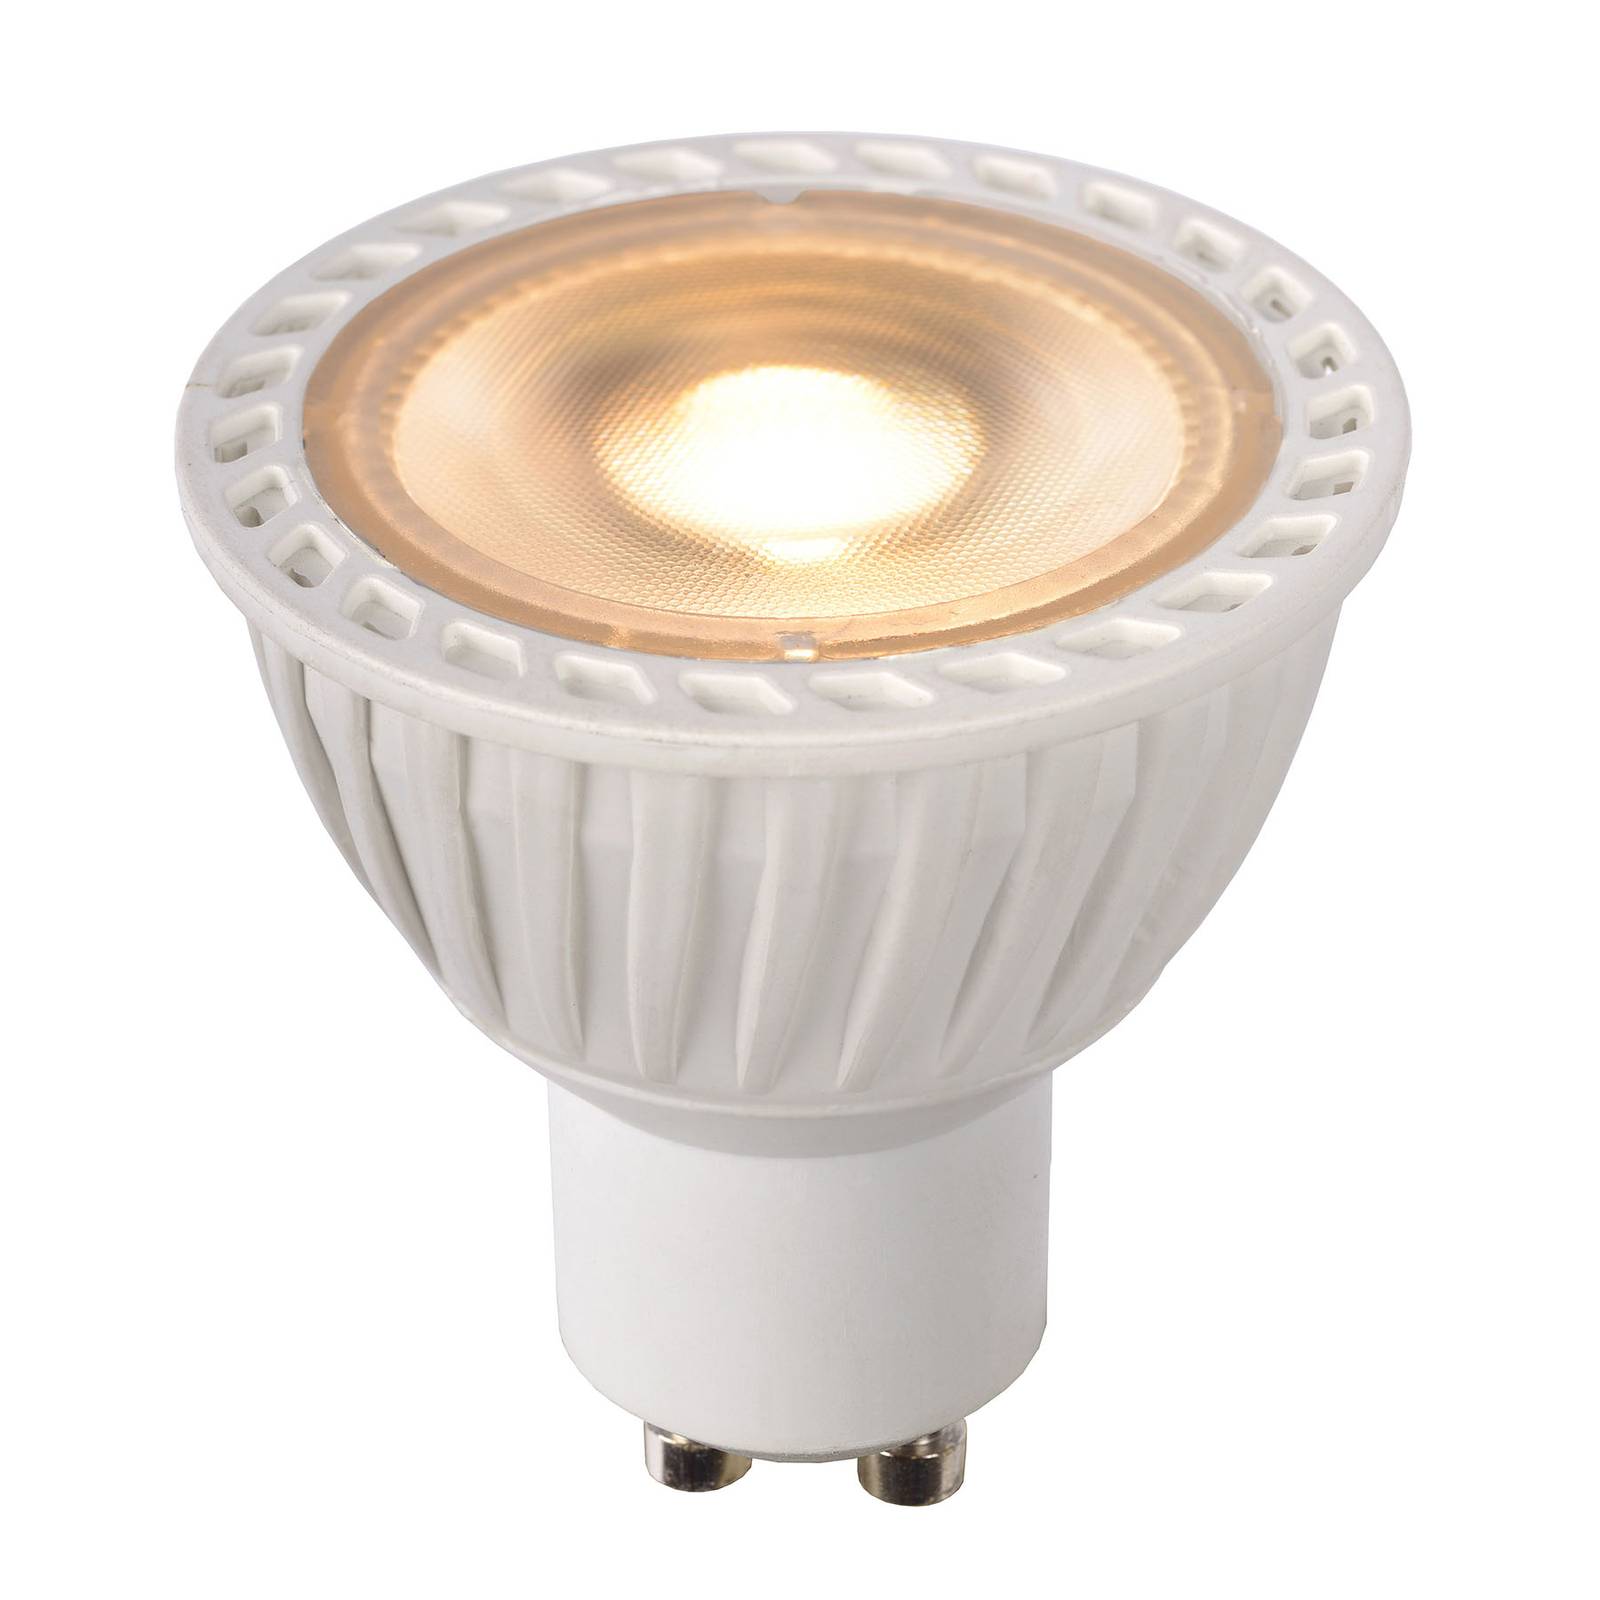 Lucide LED-Reflektor GU10 5W dim to warm, weiß